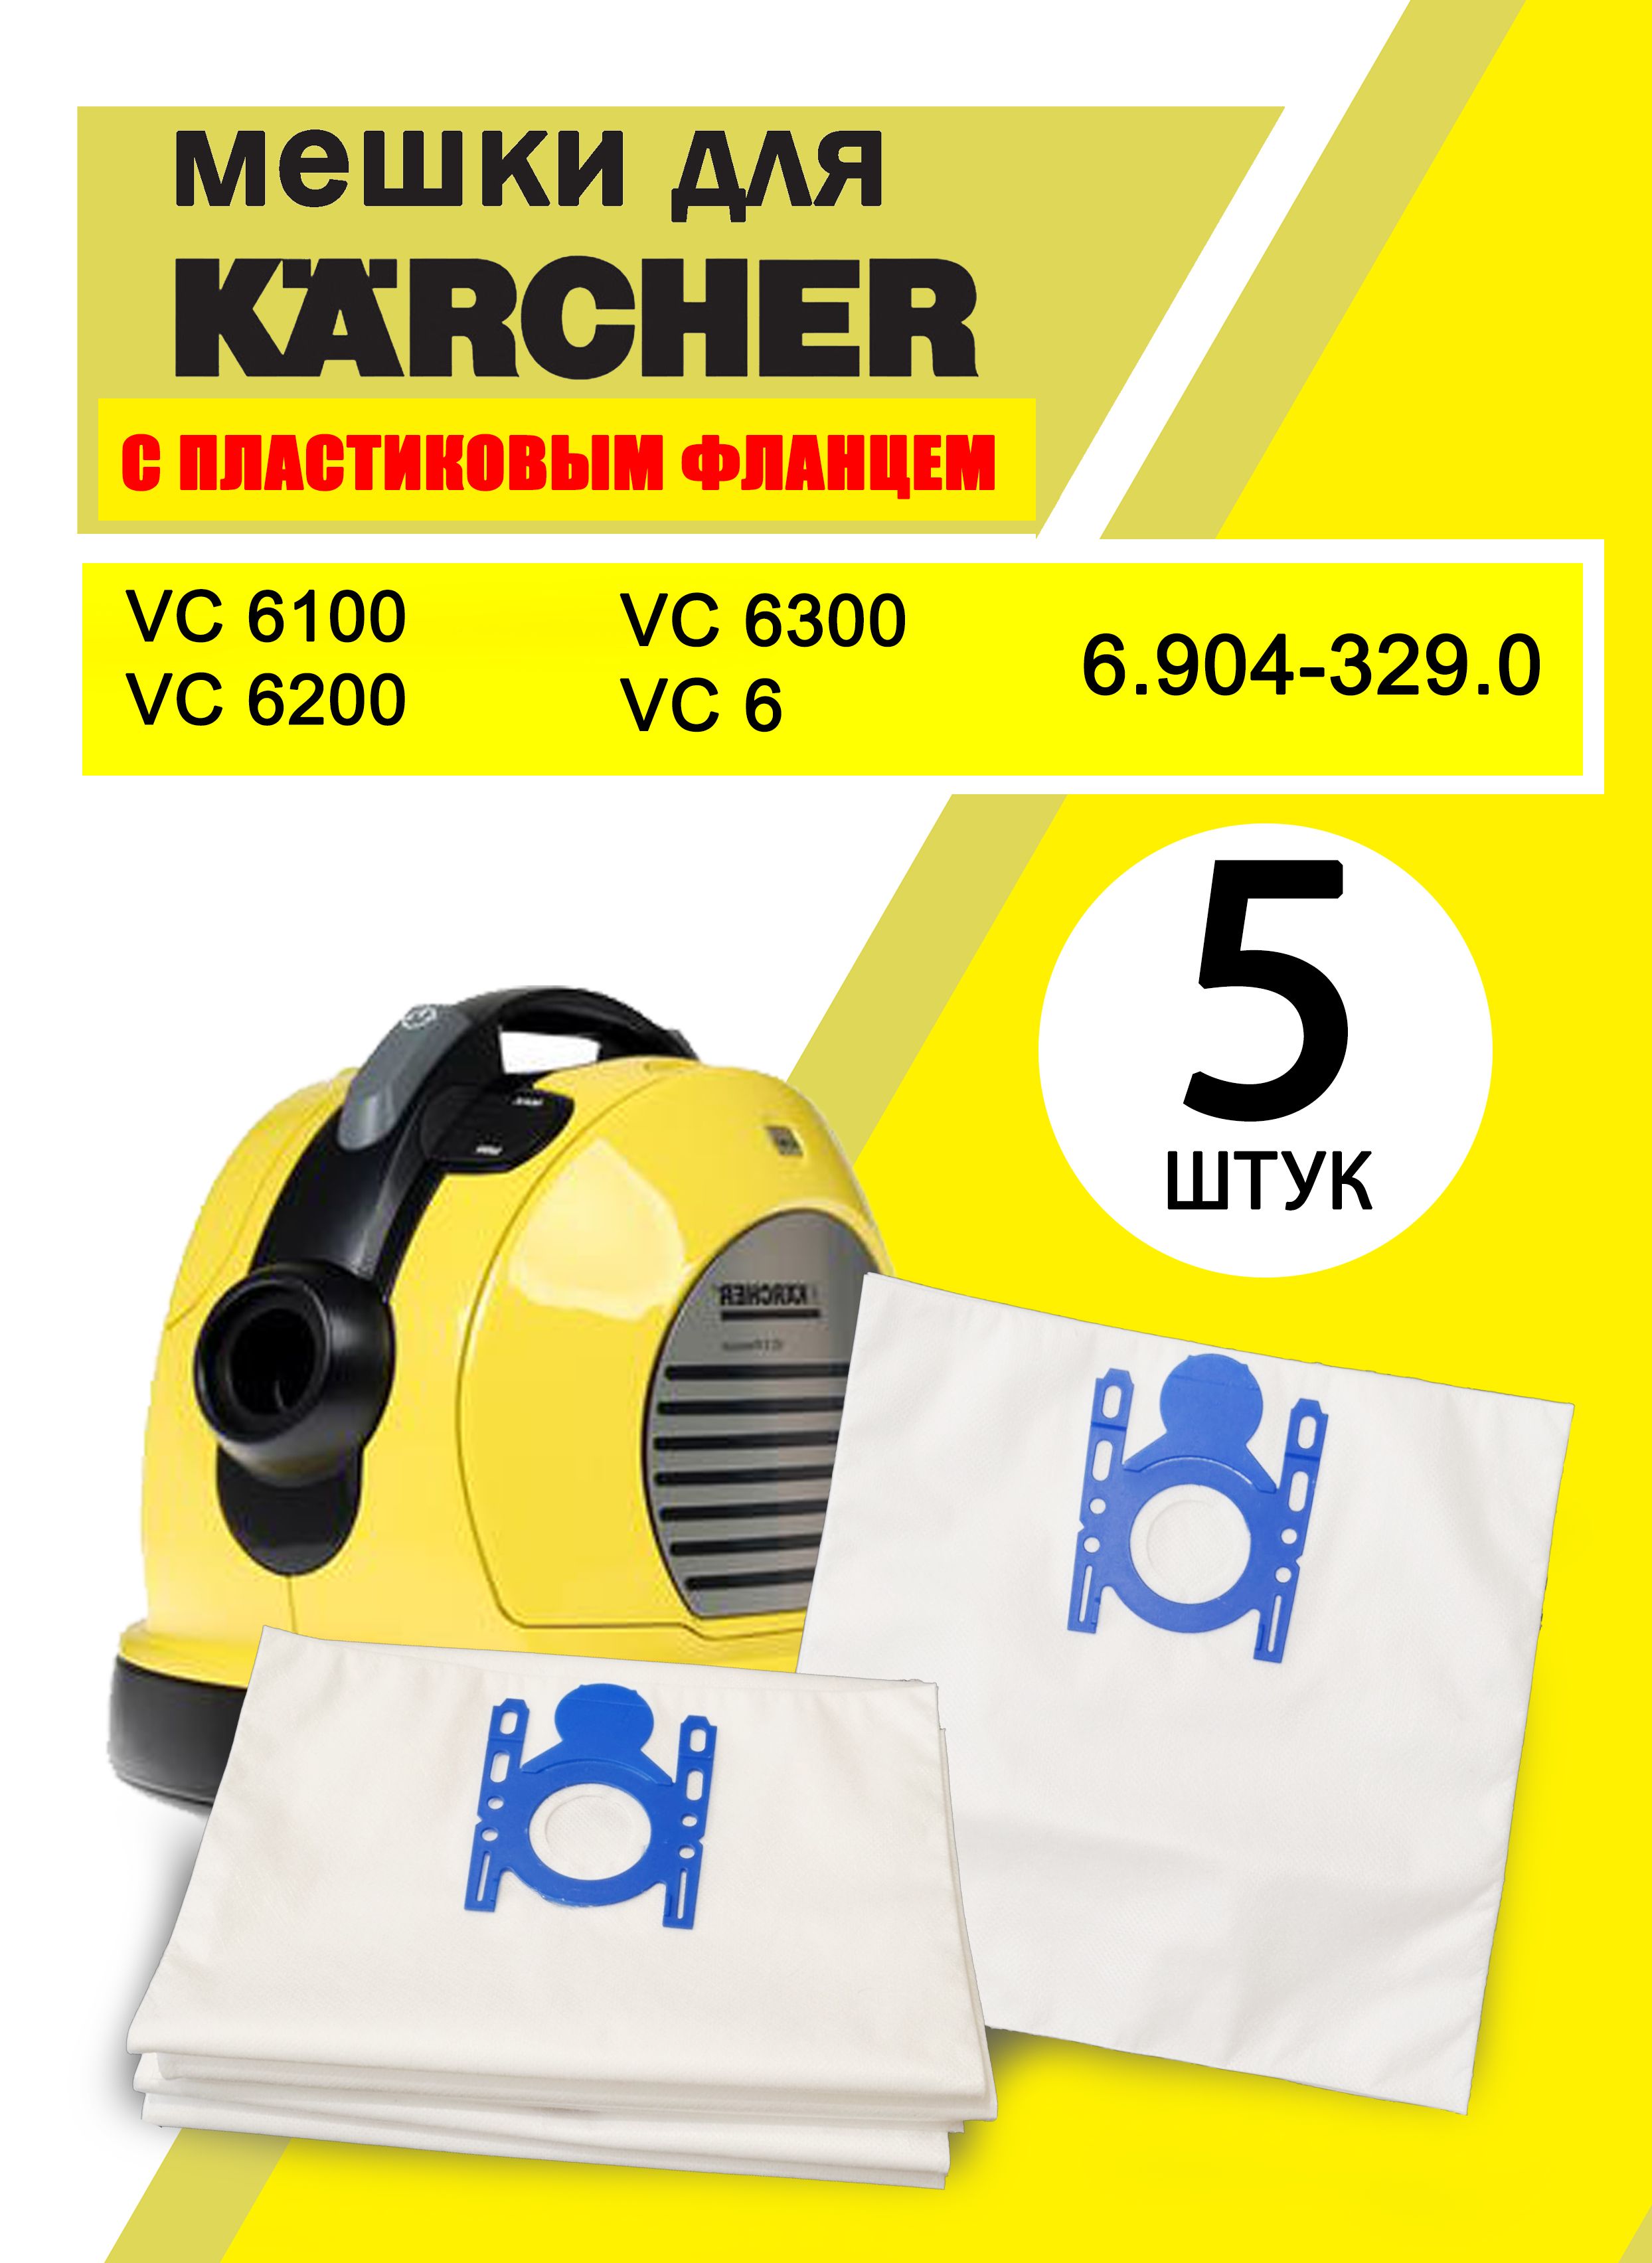 Sachet filtre ouate VC 6XXX (pcs 5) Karcher 6.904-329.0 